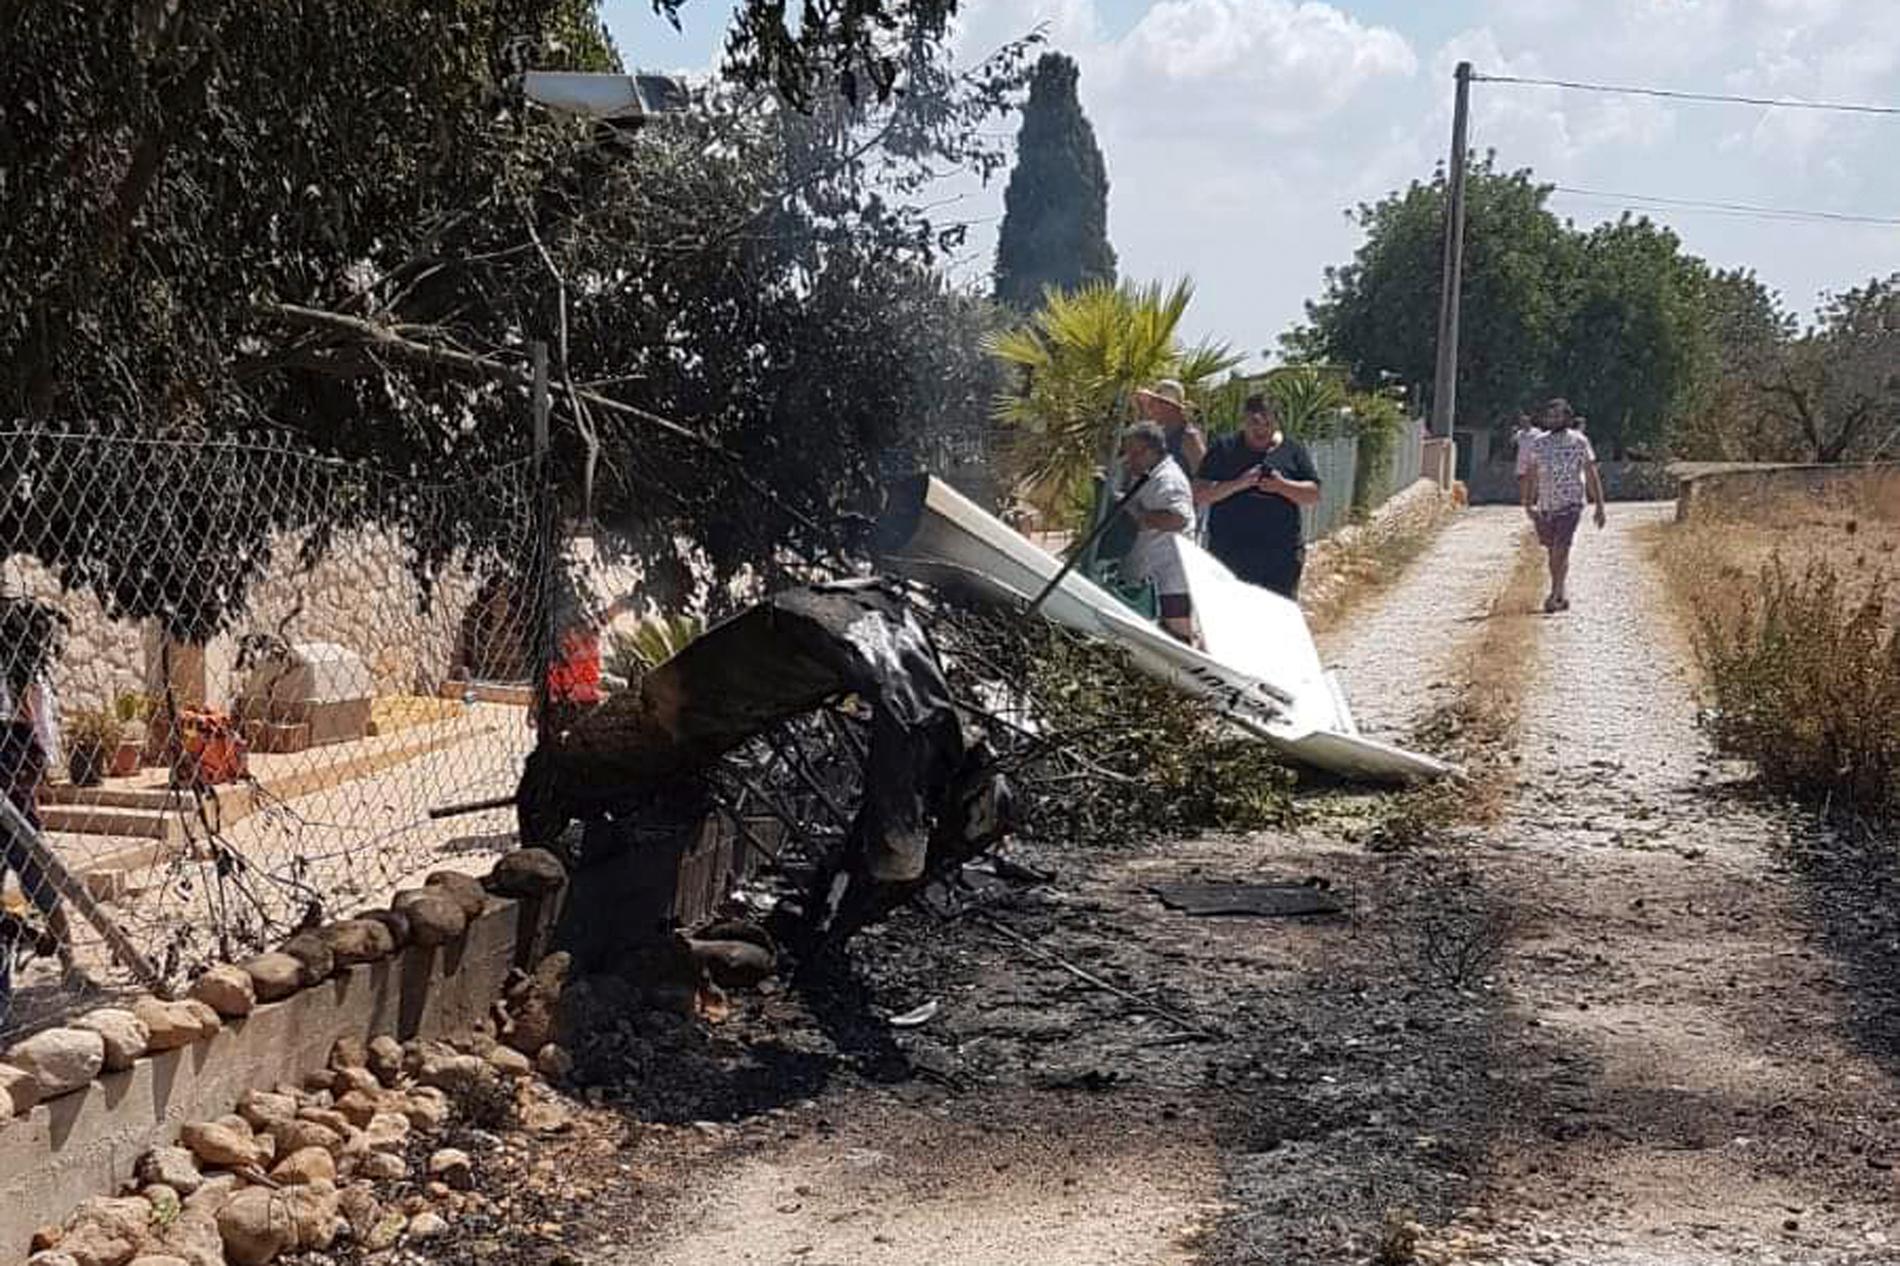 Sju personer omkom när en helikopter och ett mindre flygplan kolliderade på Mallorca i Spanien.